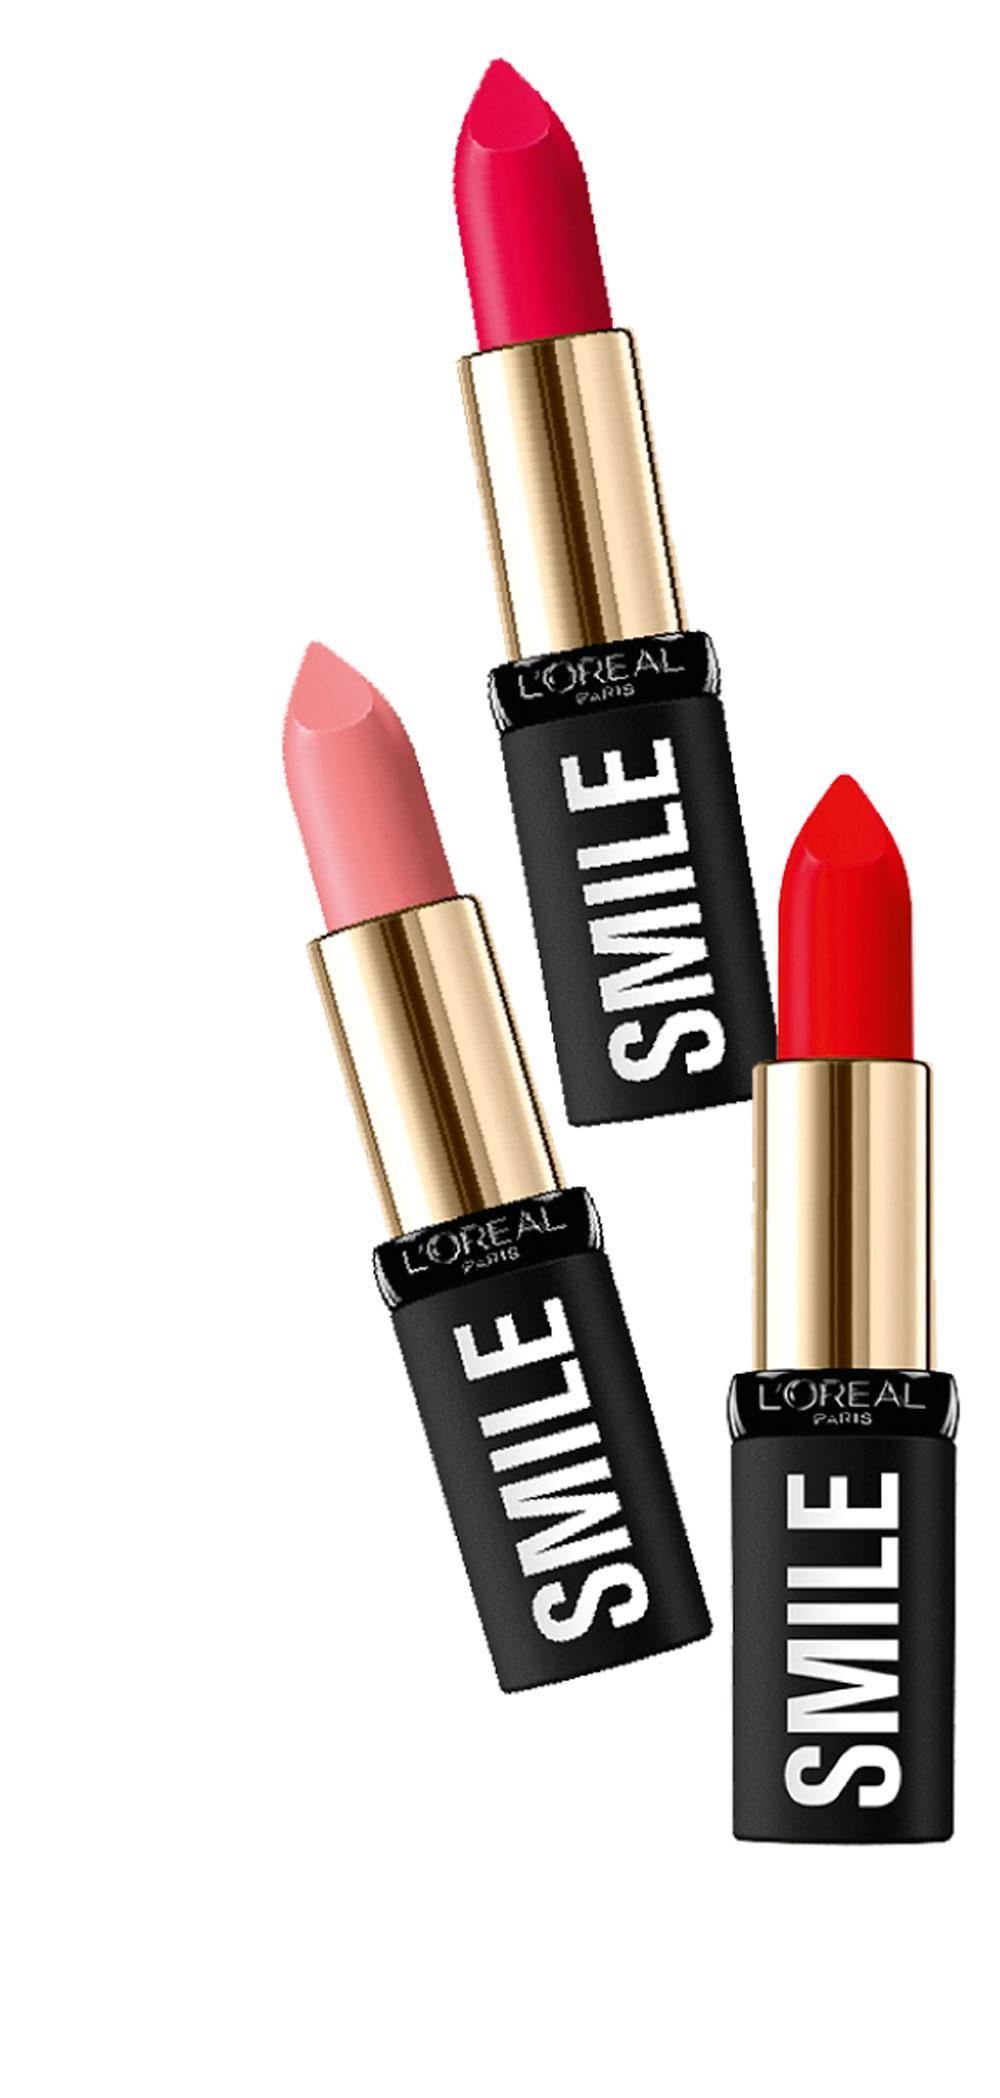 Lippen stiften met Isabel Marant: 'Make-up moet niet te precies zijn'